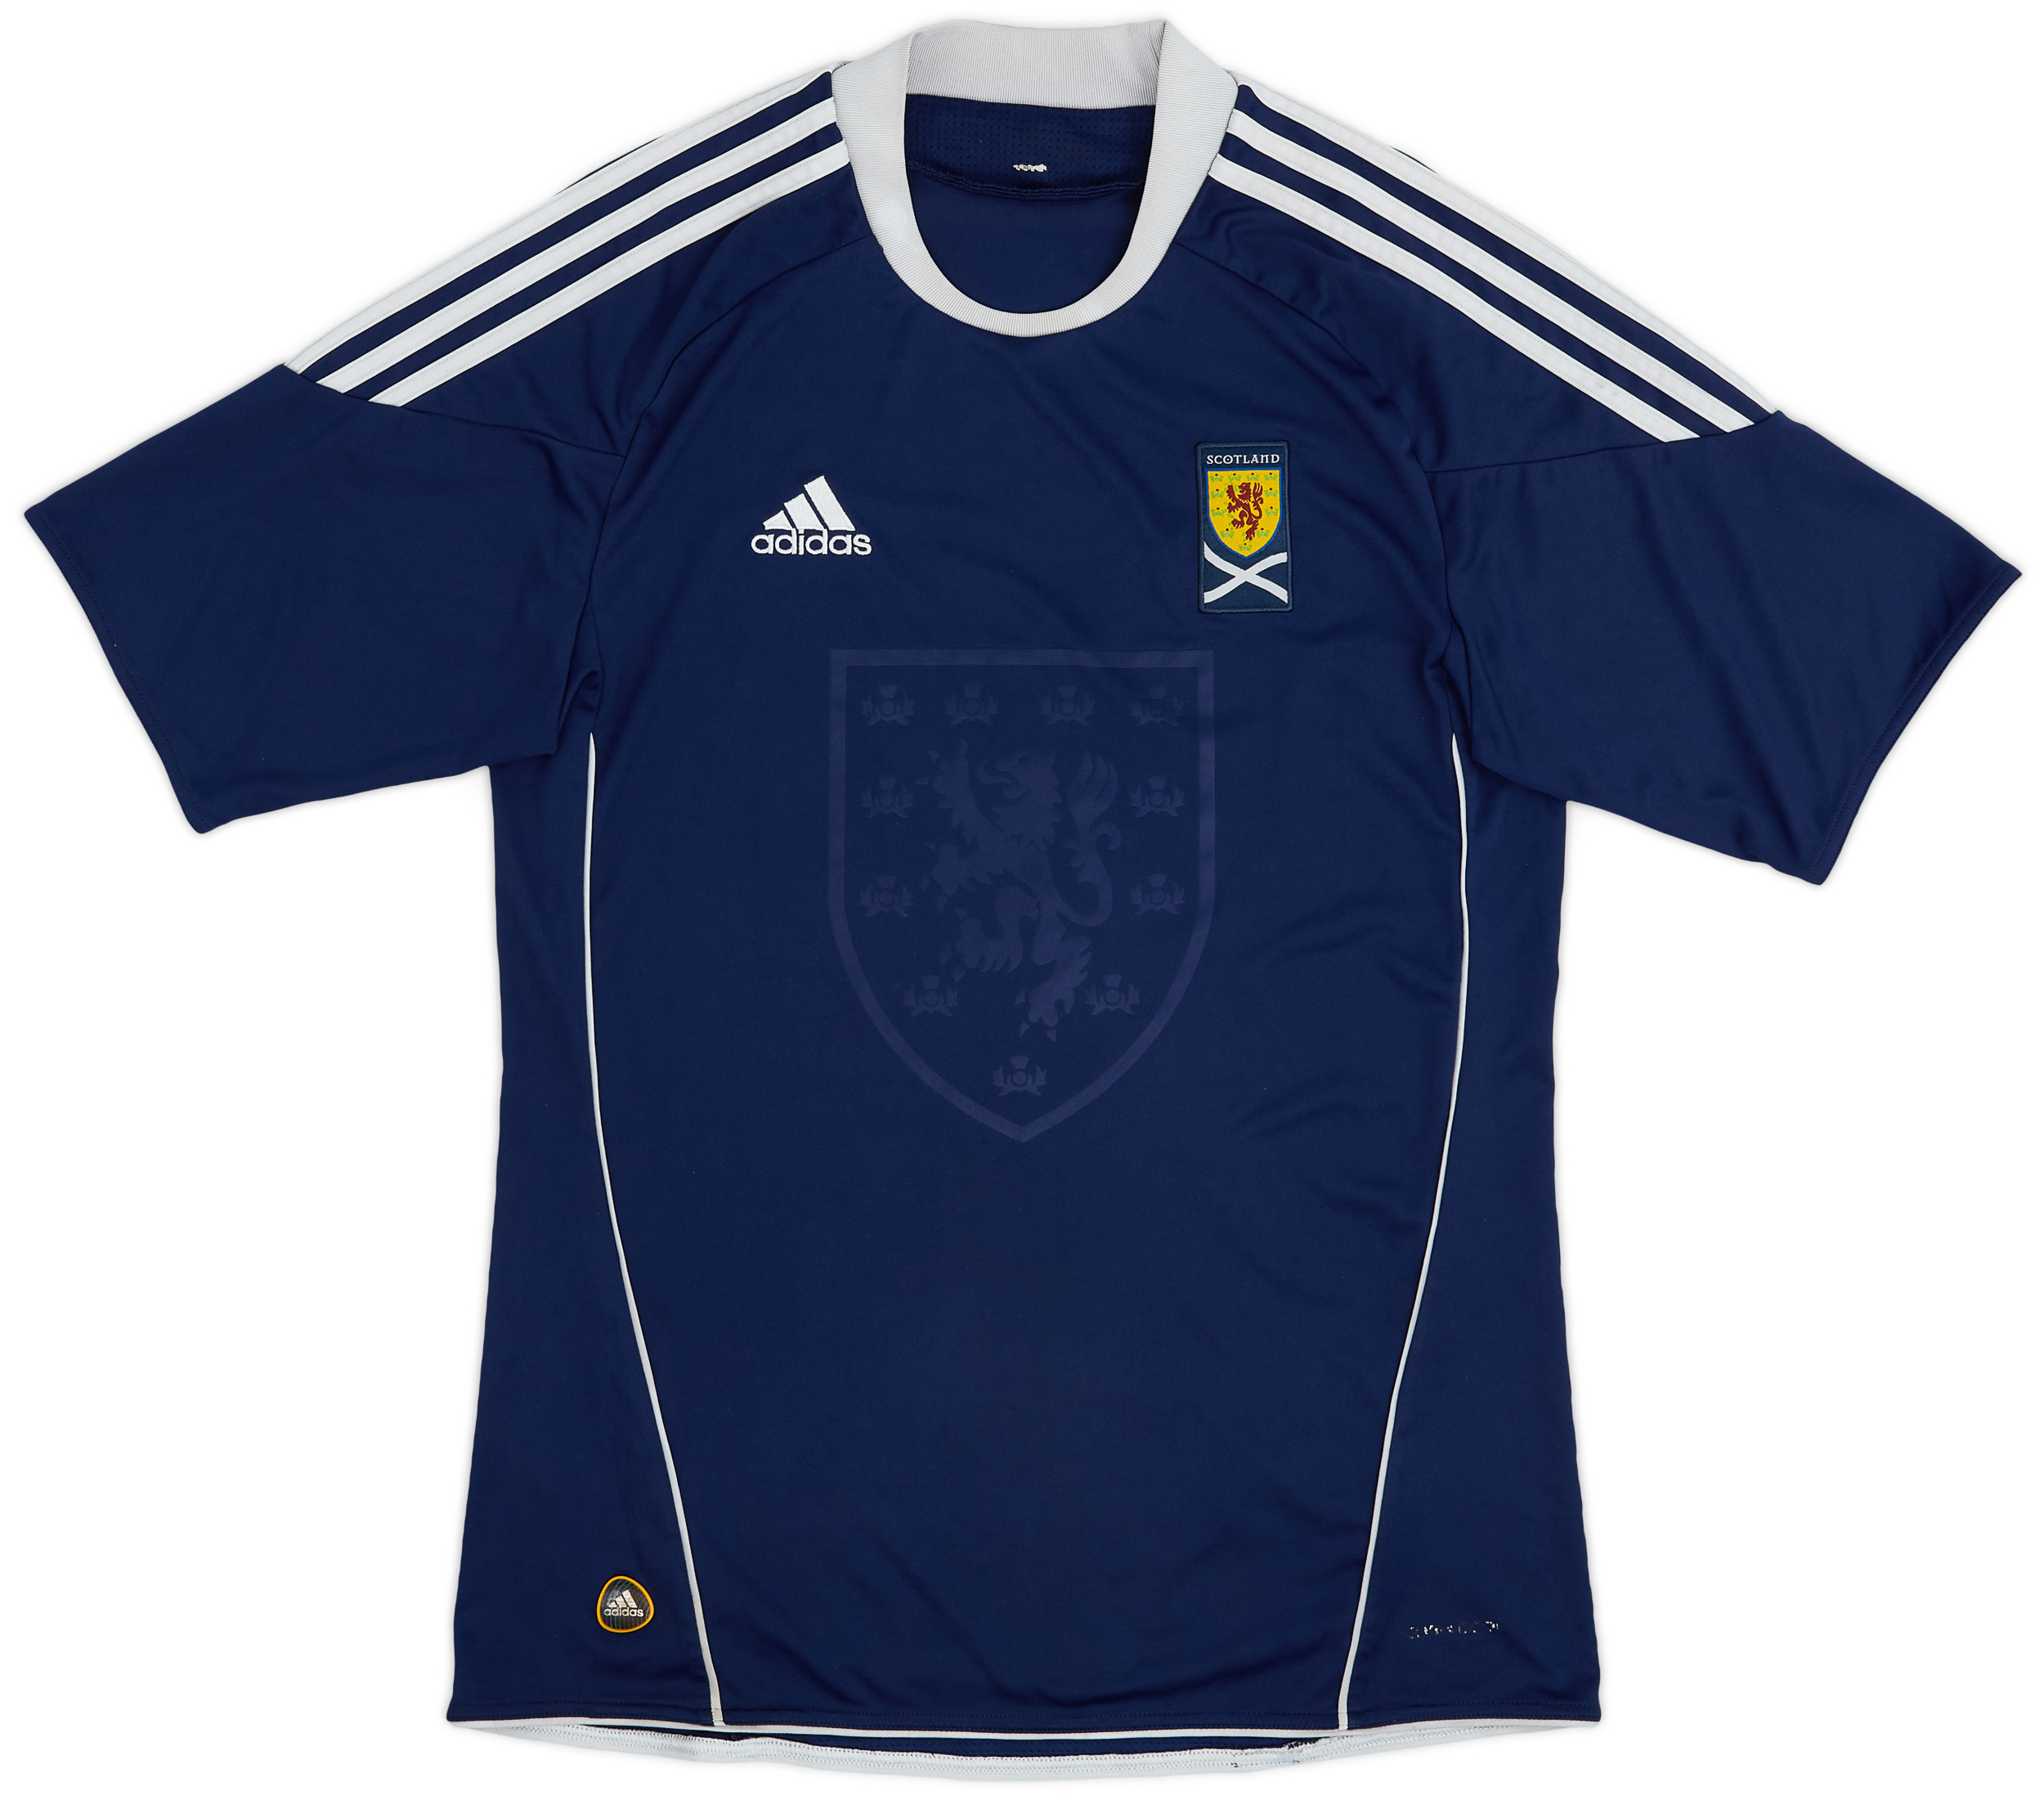 2010-11 Scotland Home Shirt - 6/10 - ()